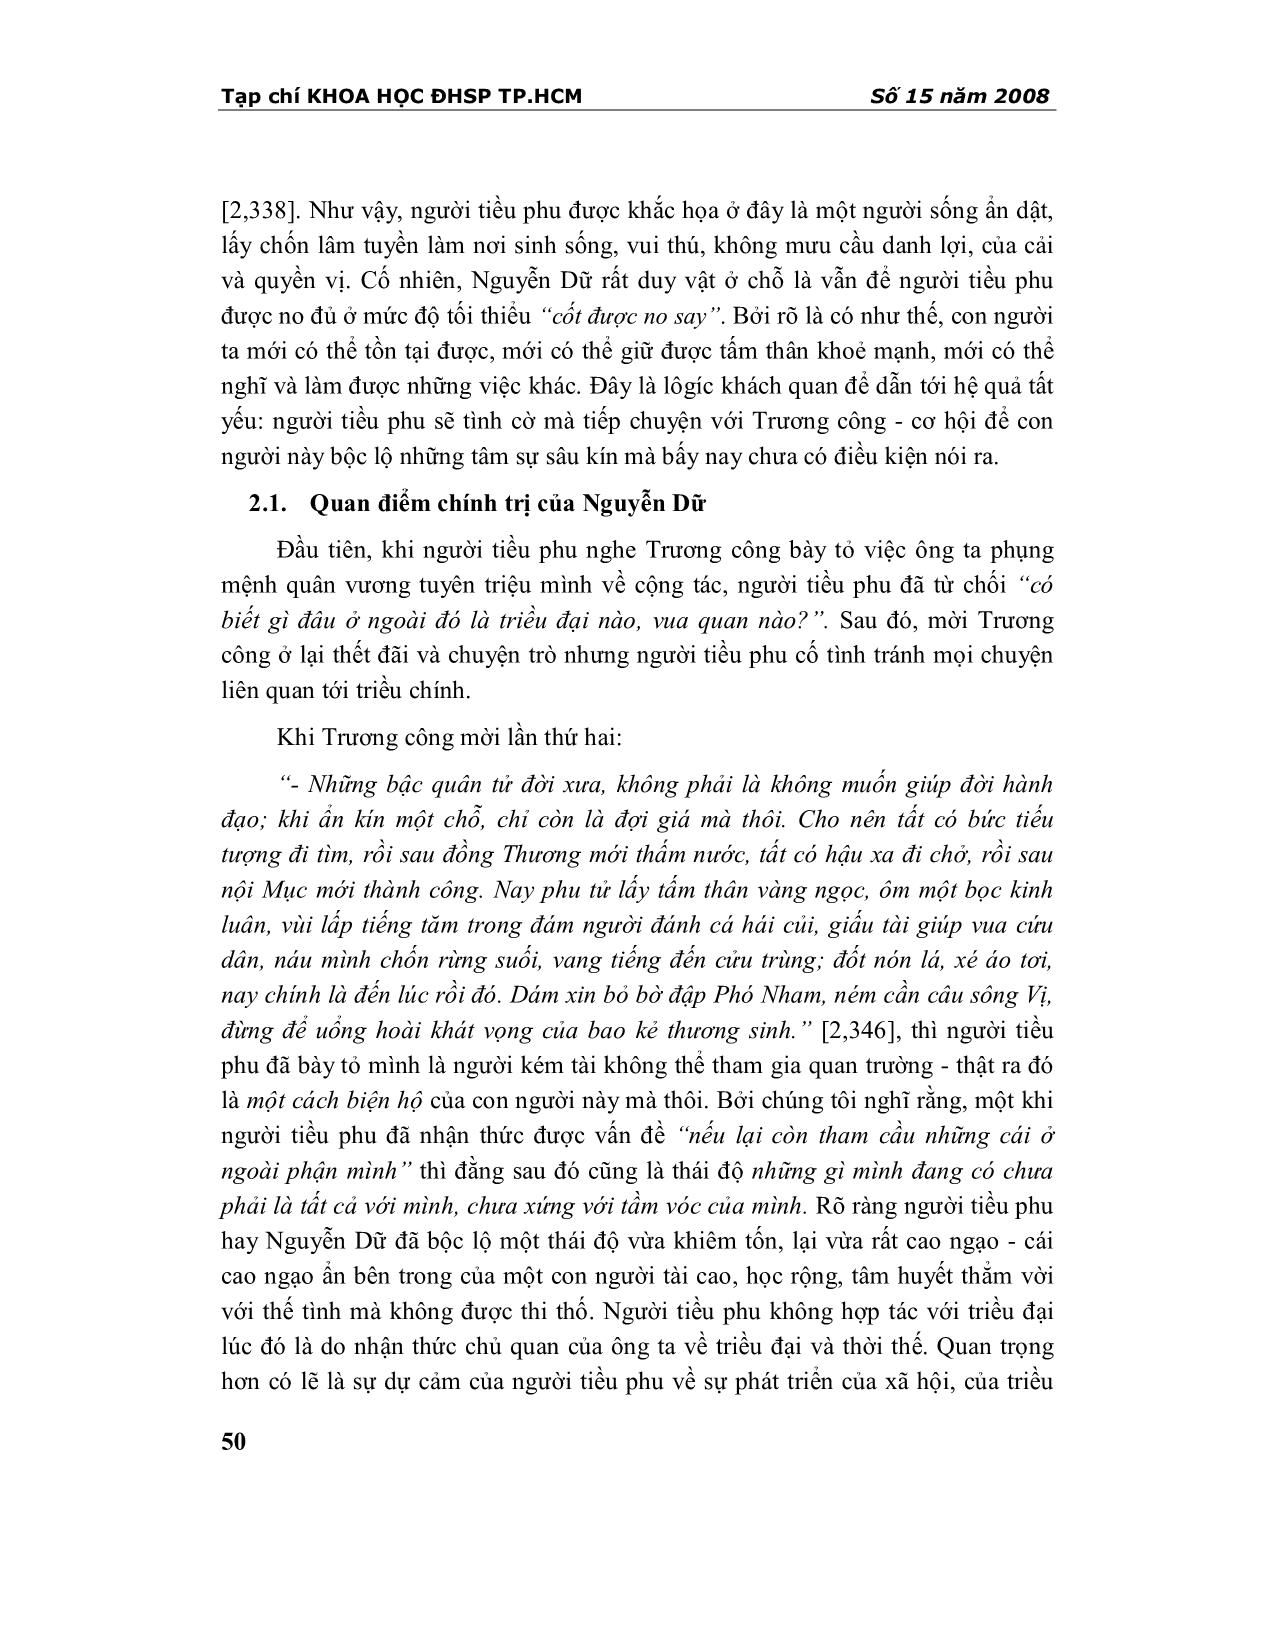 Quan điểm chính trị và lối sống ẩn dật của Nguyễn Dữ qua chuyện đối đáp của người tiều ở Núi Na trang 2